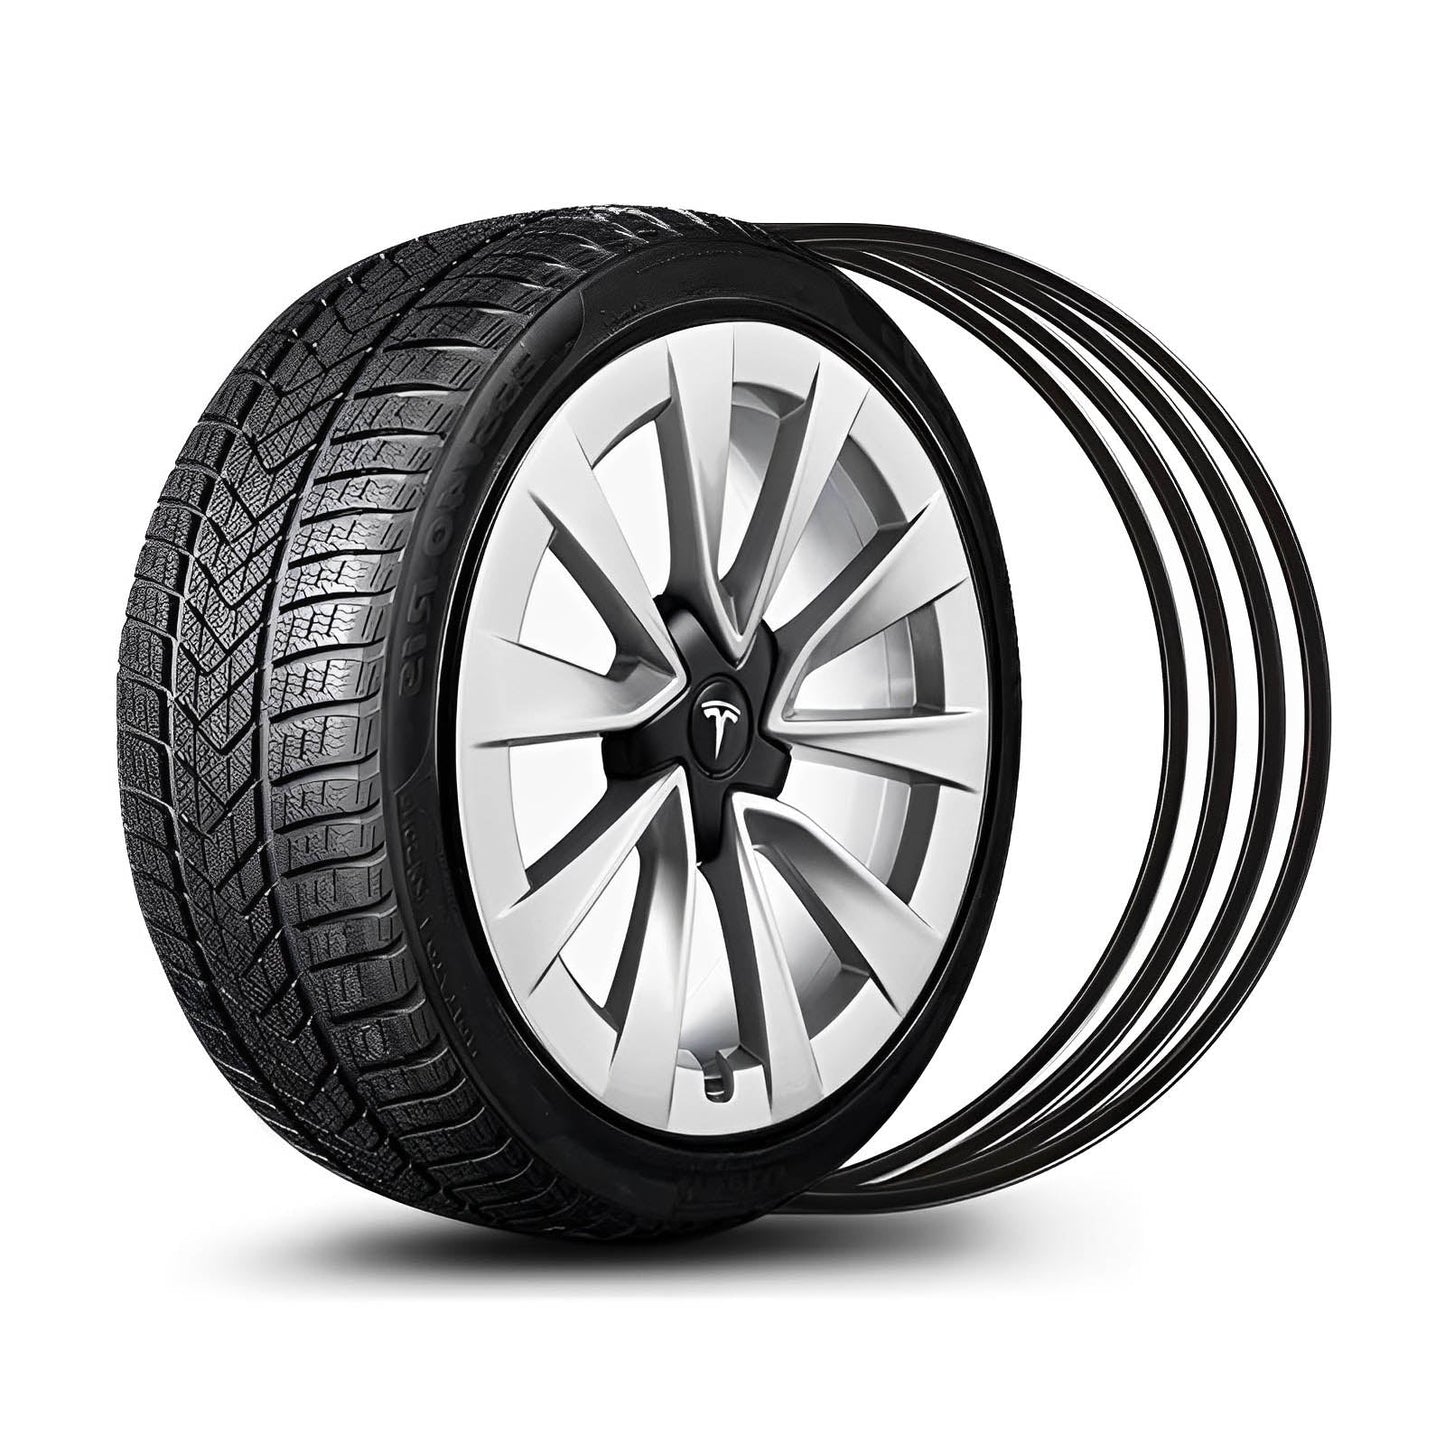 Aluminum Alloy Wheel Rim Protectors for Tesla Models 3/Y/S/X (4 PCS) - Teslauaccessories